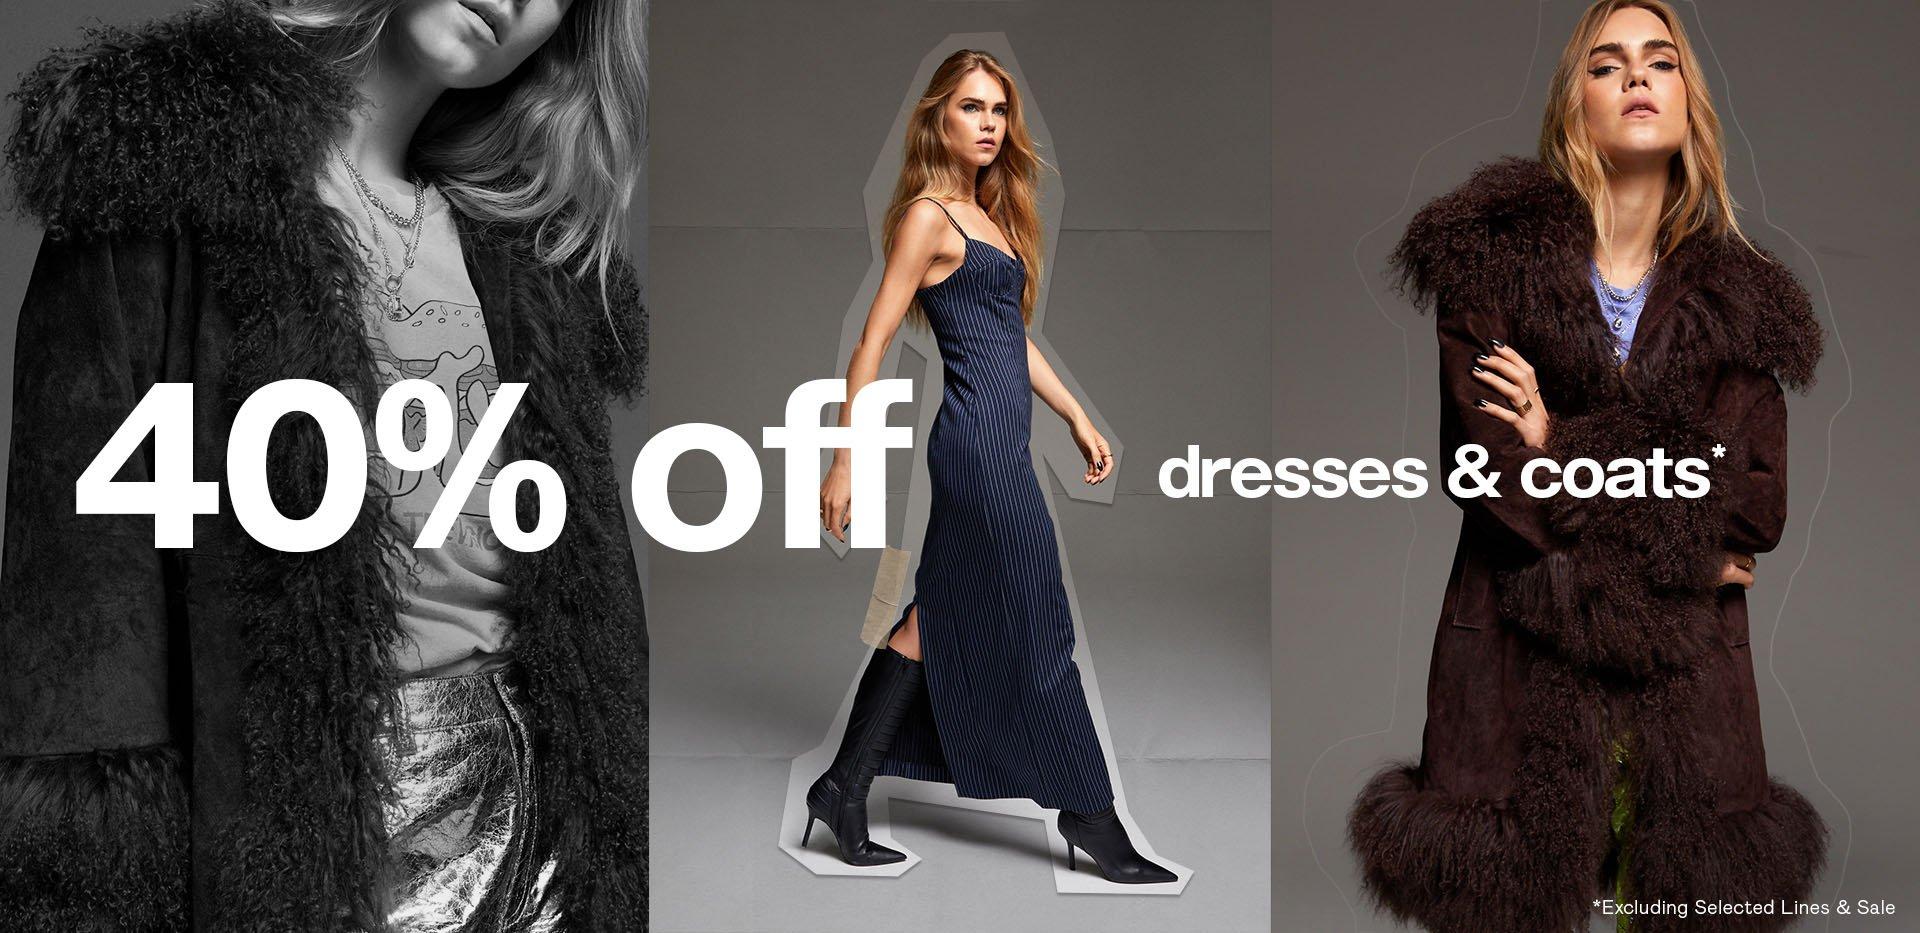 40% OFF Dresses & Coats*